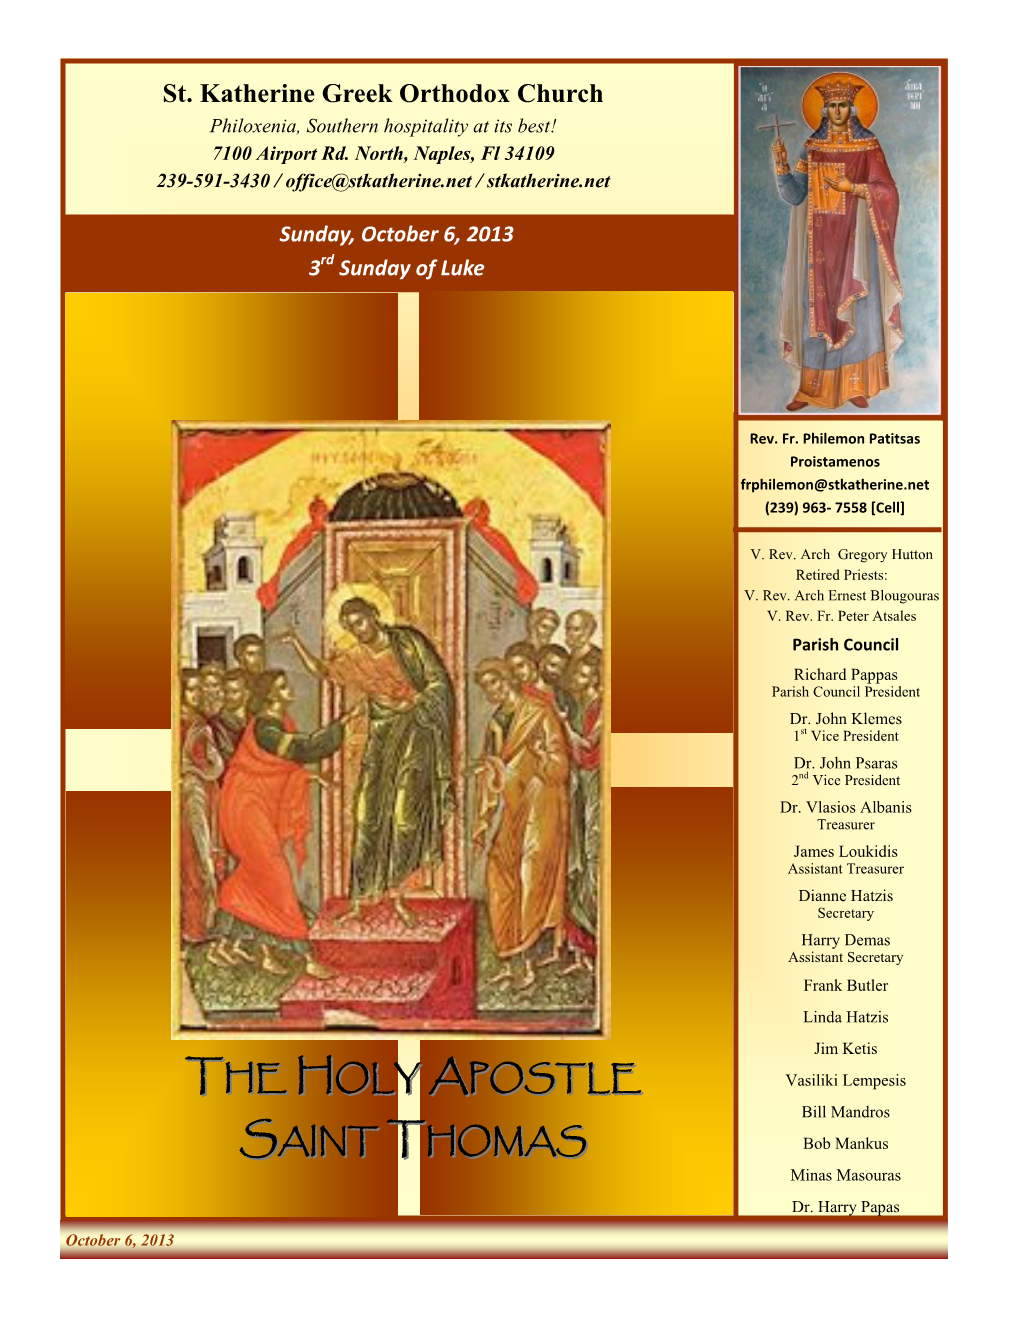 The Holy Apostle Saint Thomas